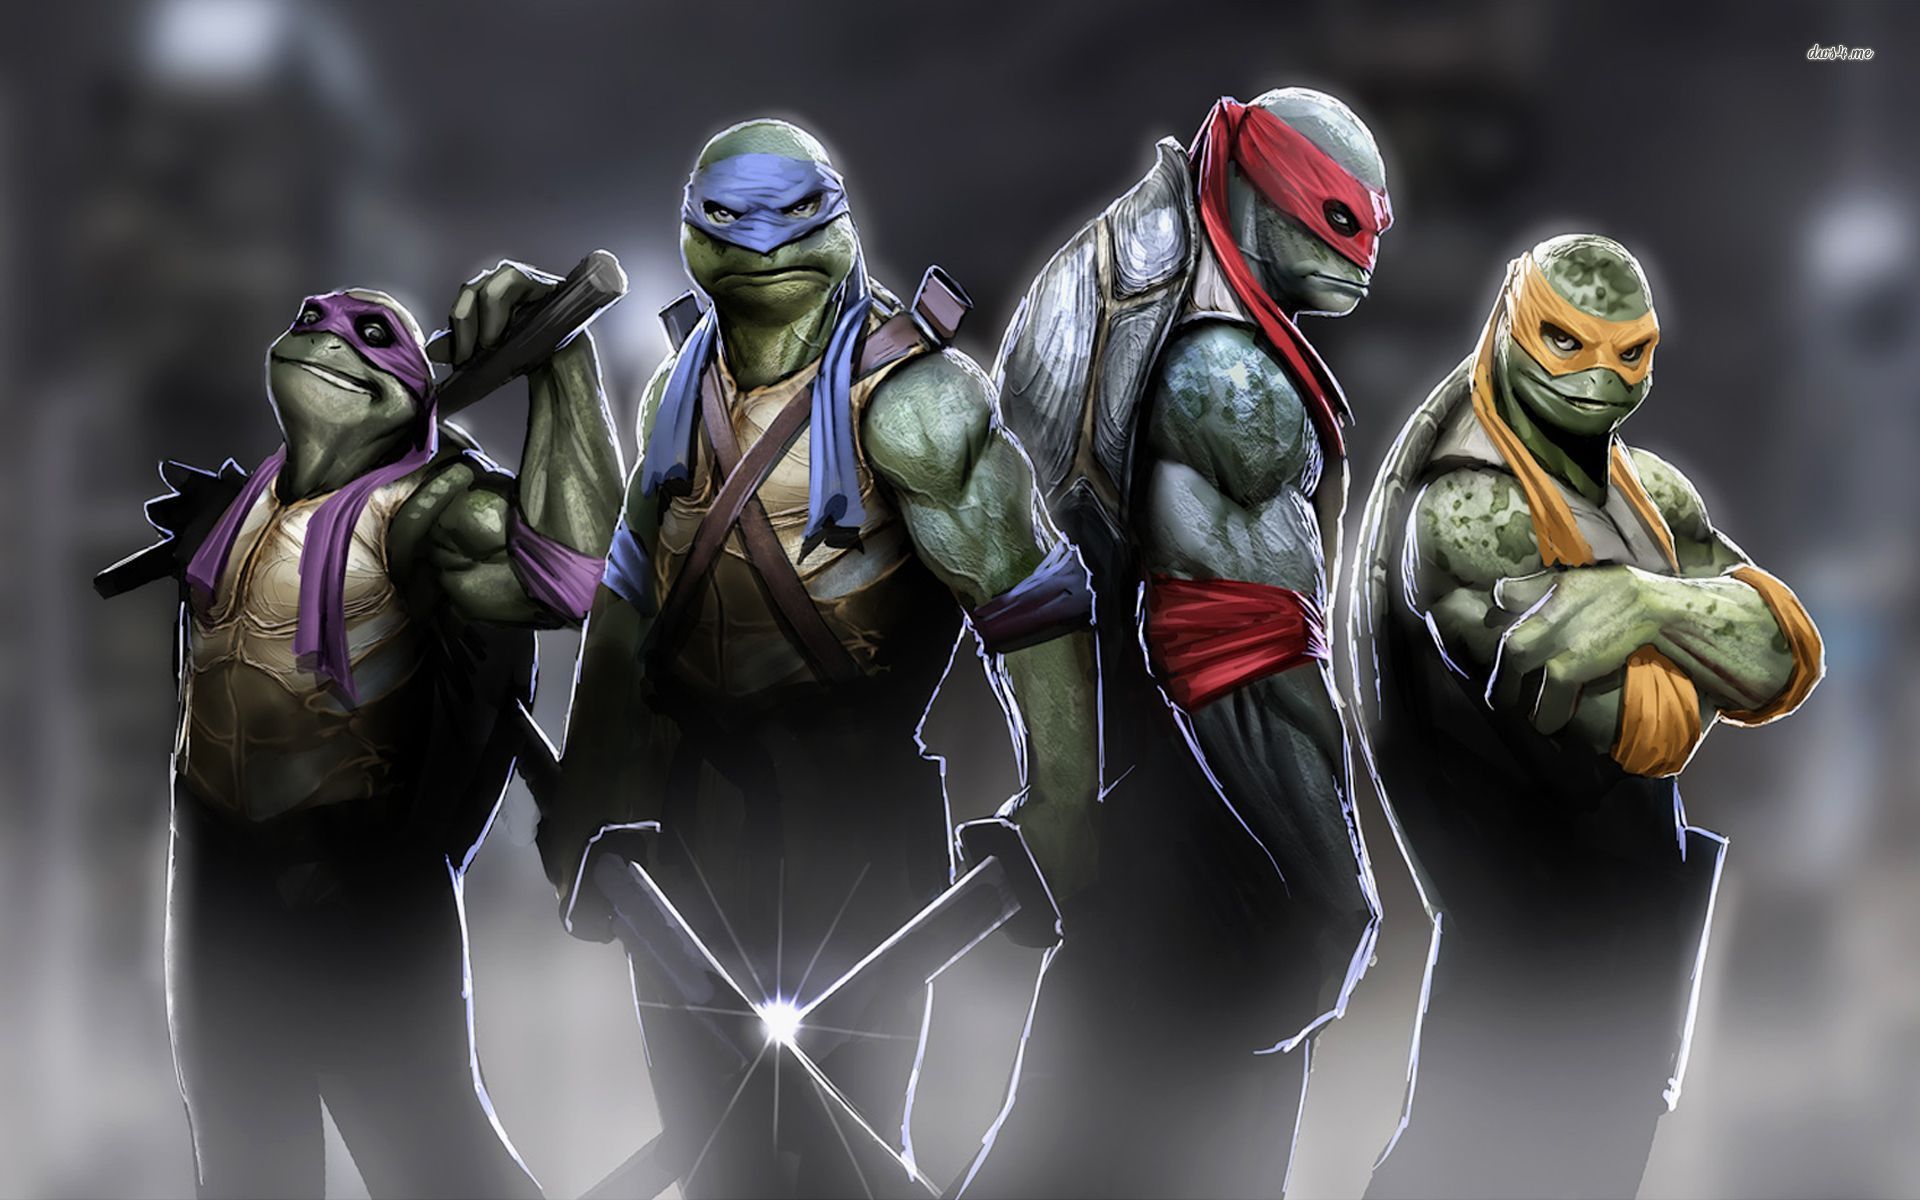 Wallpapers of Teenage Mutant Ninja Turtles 2014 movie